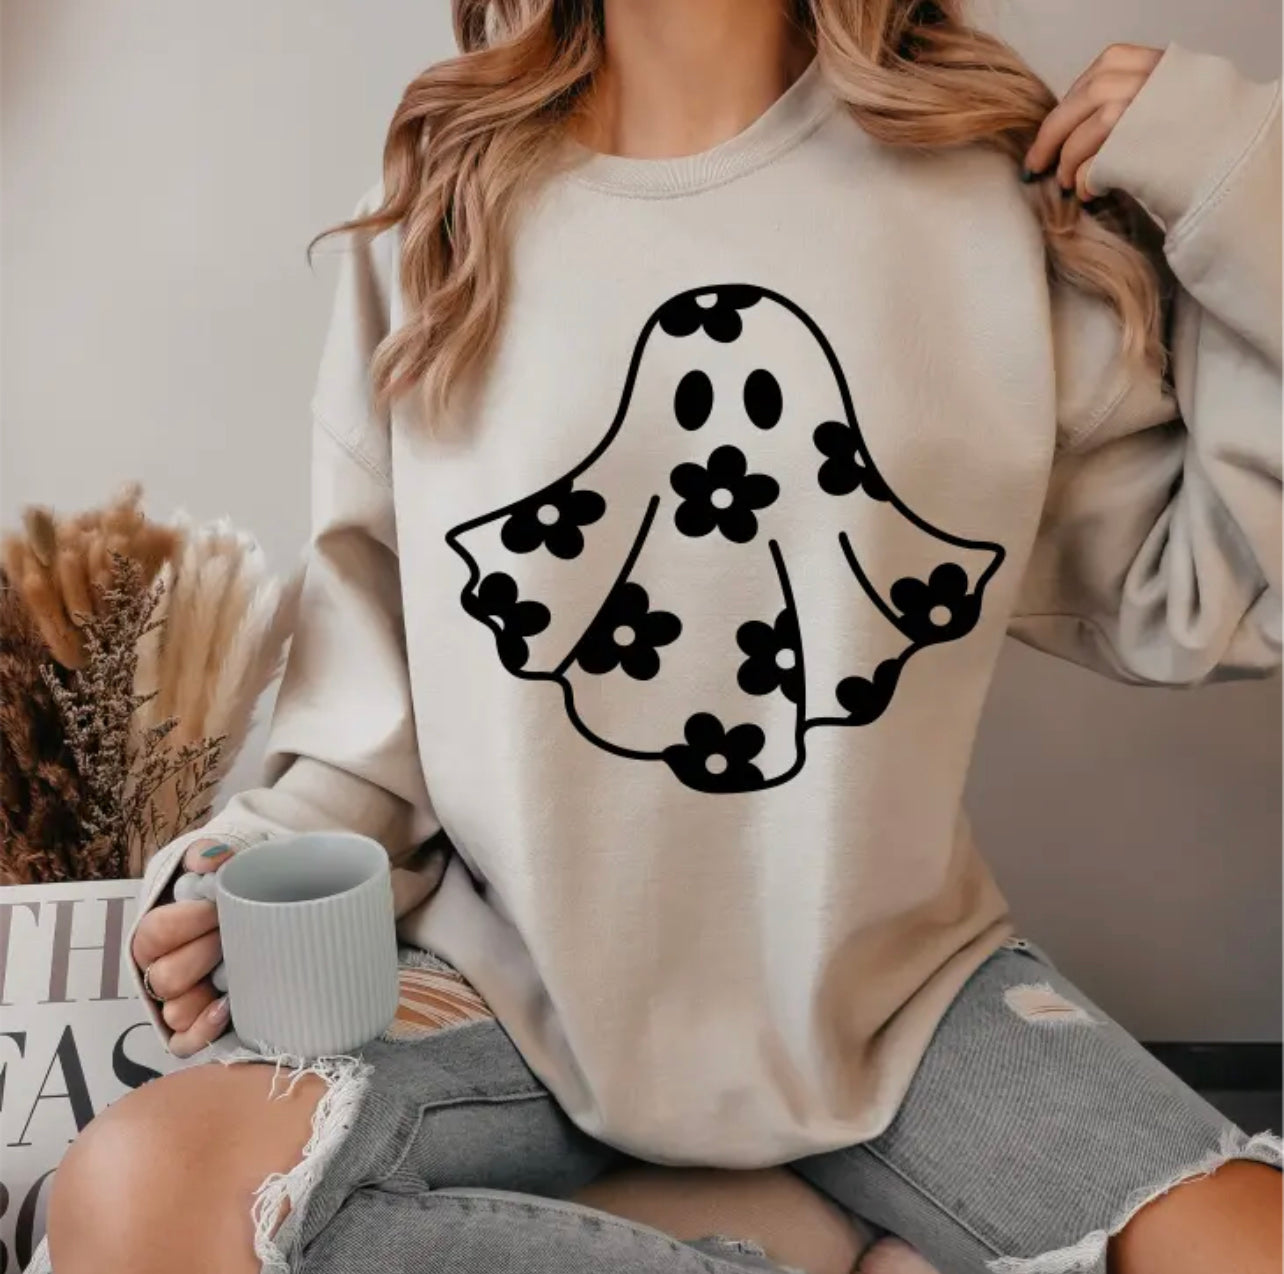 Cute Ghost Crewneck Sweatshirt